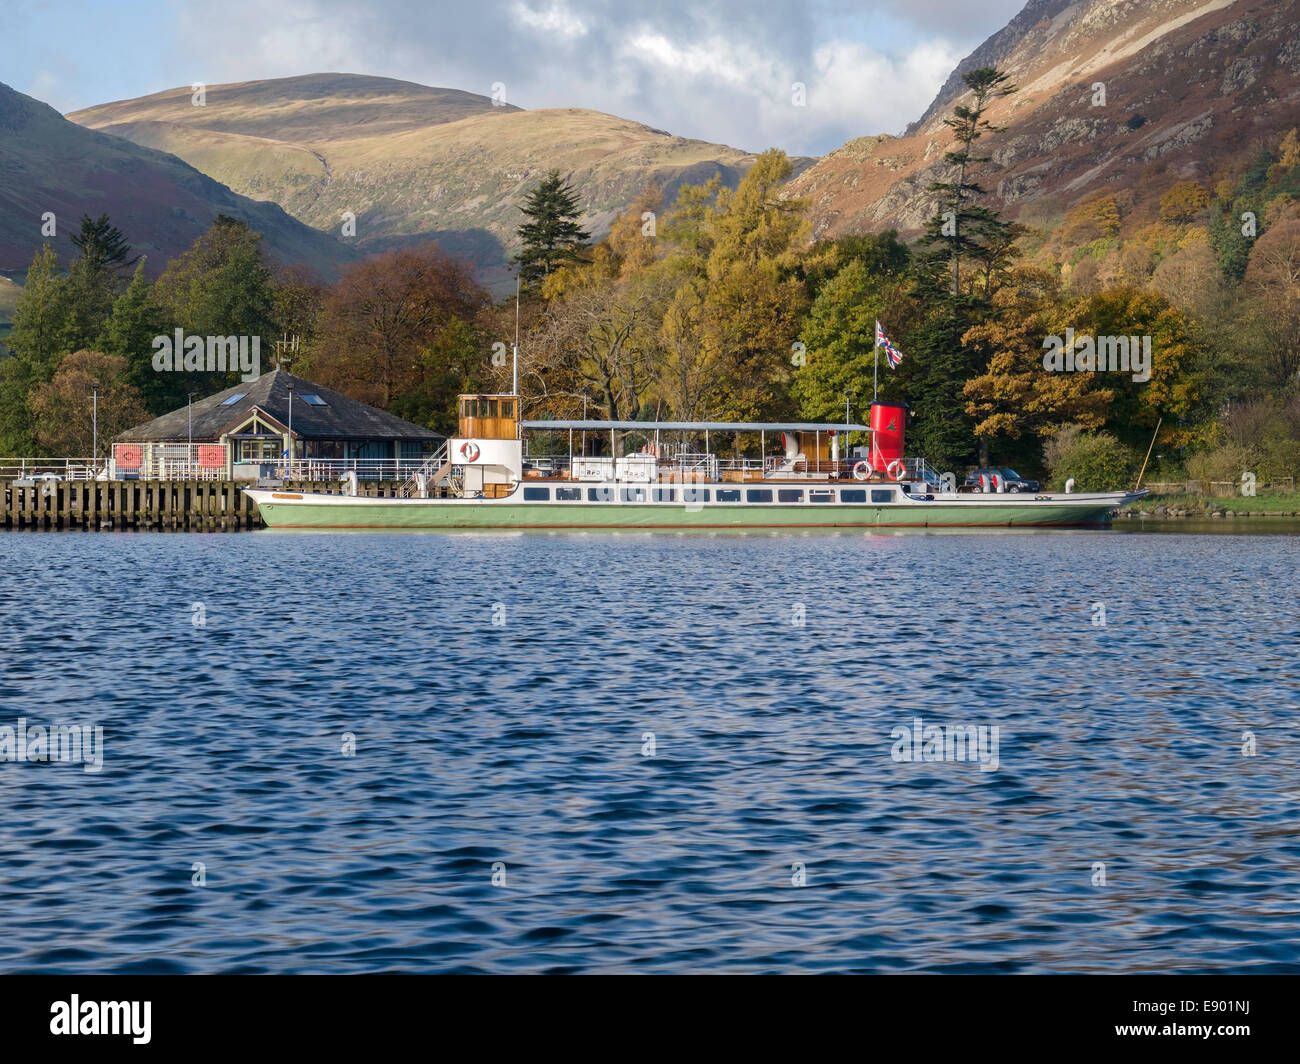 Raven Steamer at Glenridding pier on Ullswater lake, Lake District, Cumbria, England, UK Stock Photo